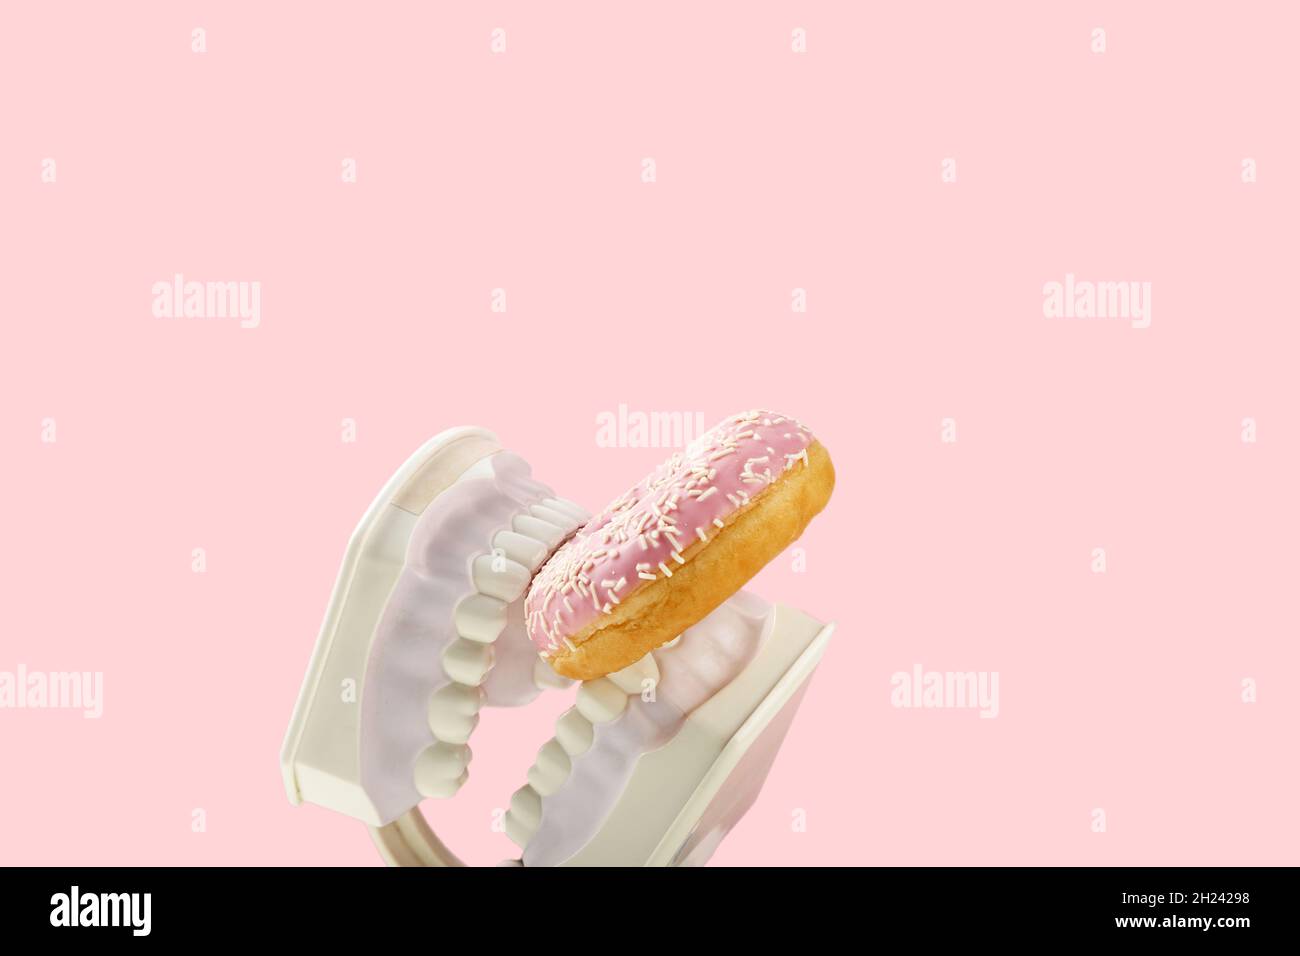 Les mâchoires en plastique maintiennent le donut rose doux dans les dents.Concept de santé dentaire, dentisterie et caries. Banque D'Images